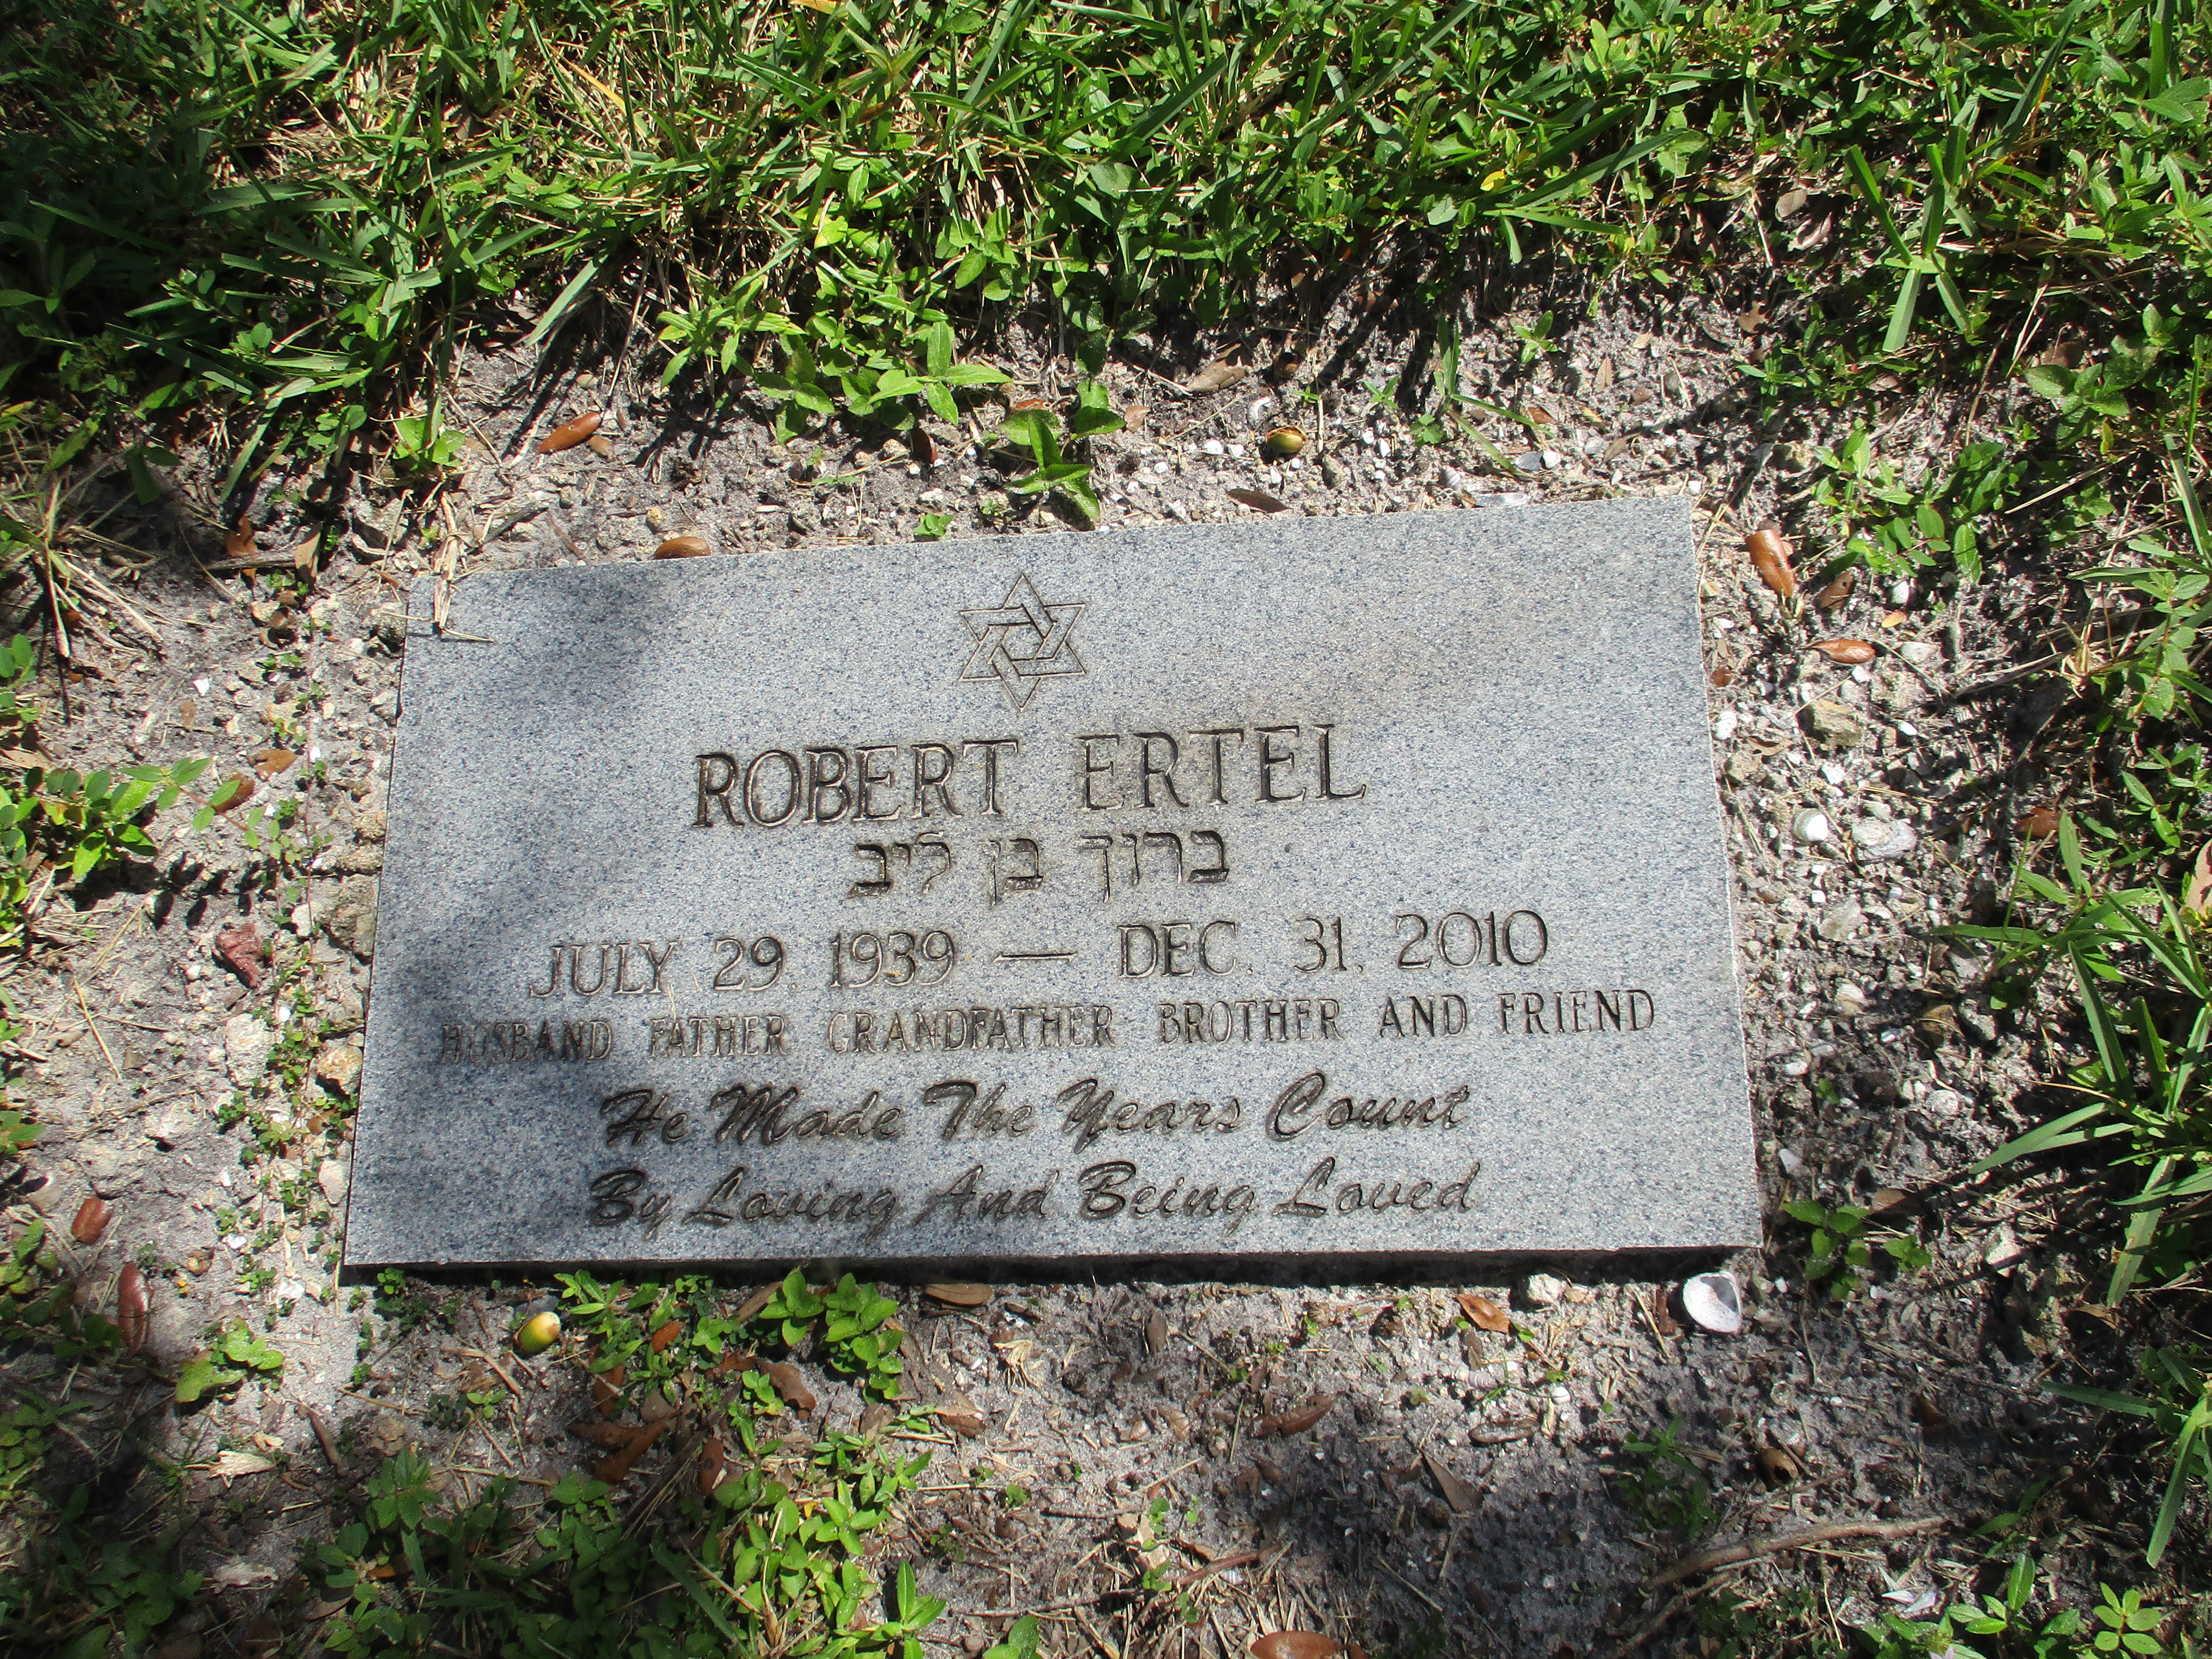 Robert Ertel